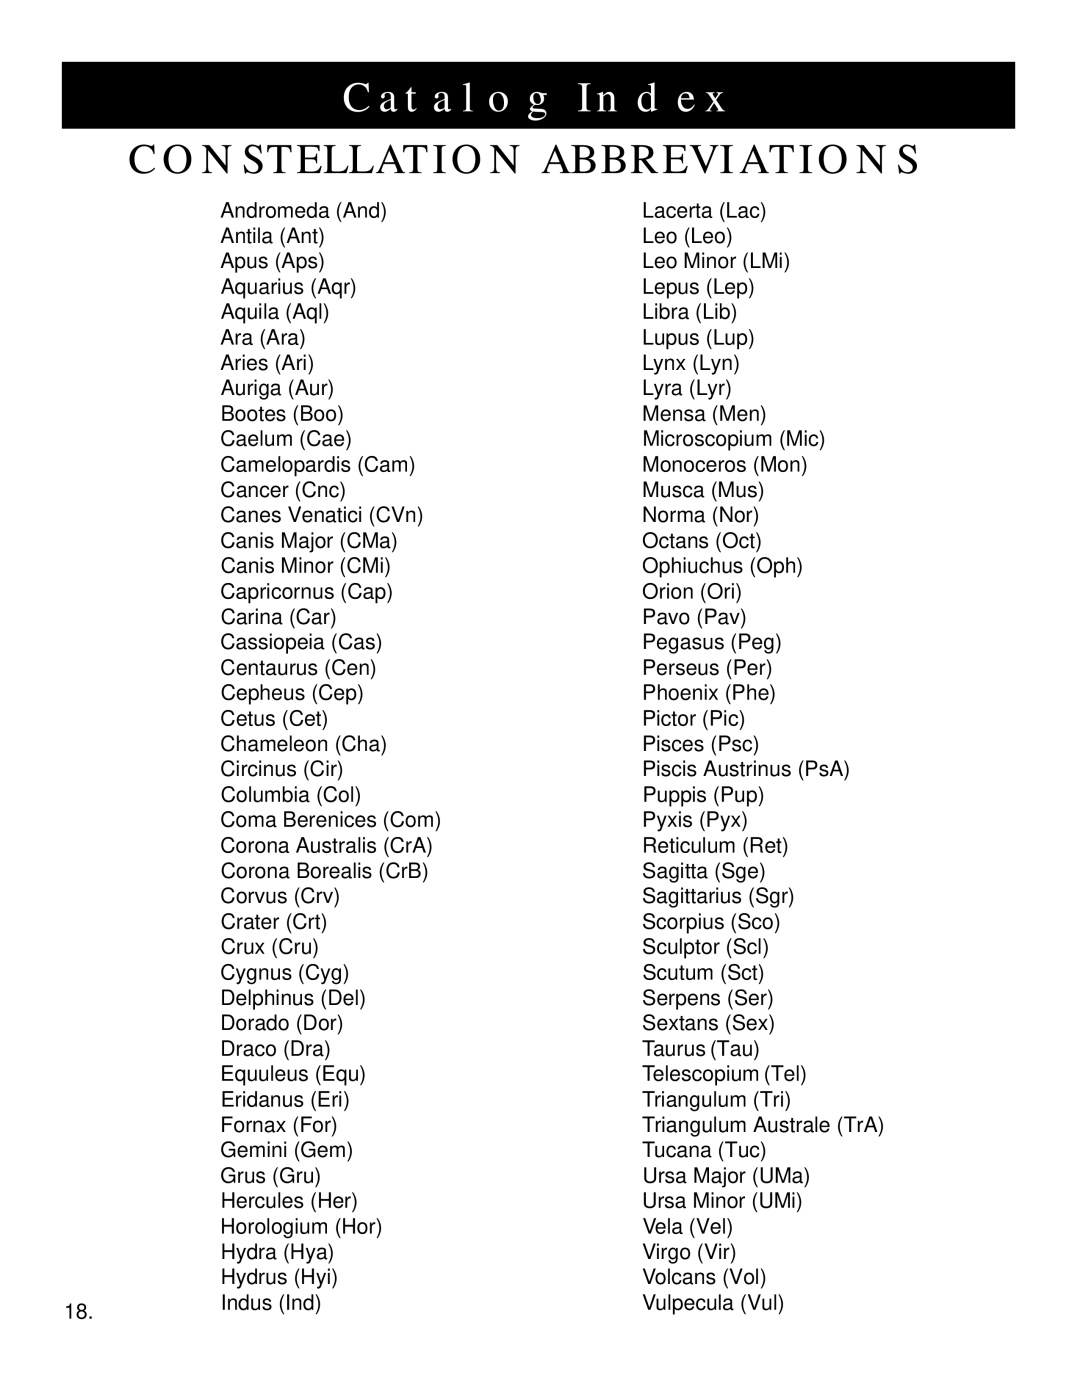 Bushnell 78-8830 instruction manual Catalog Index, Constellation Abbreviations 